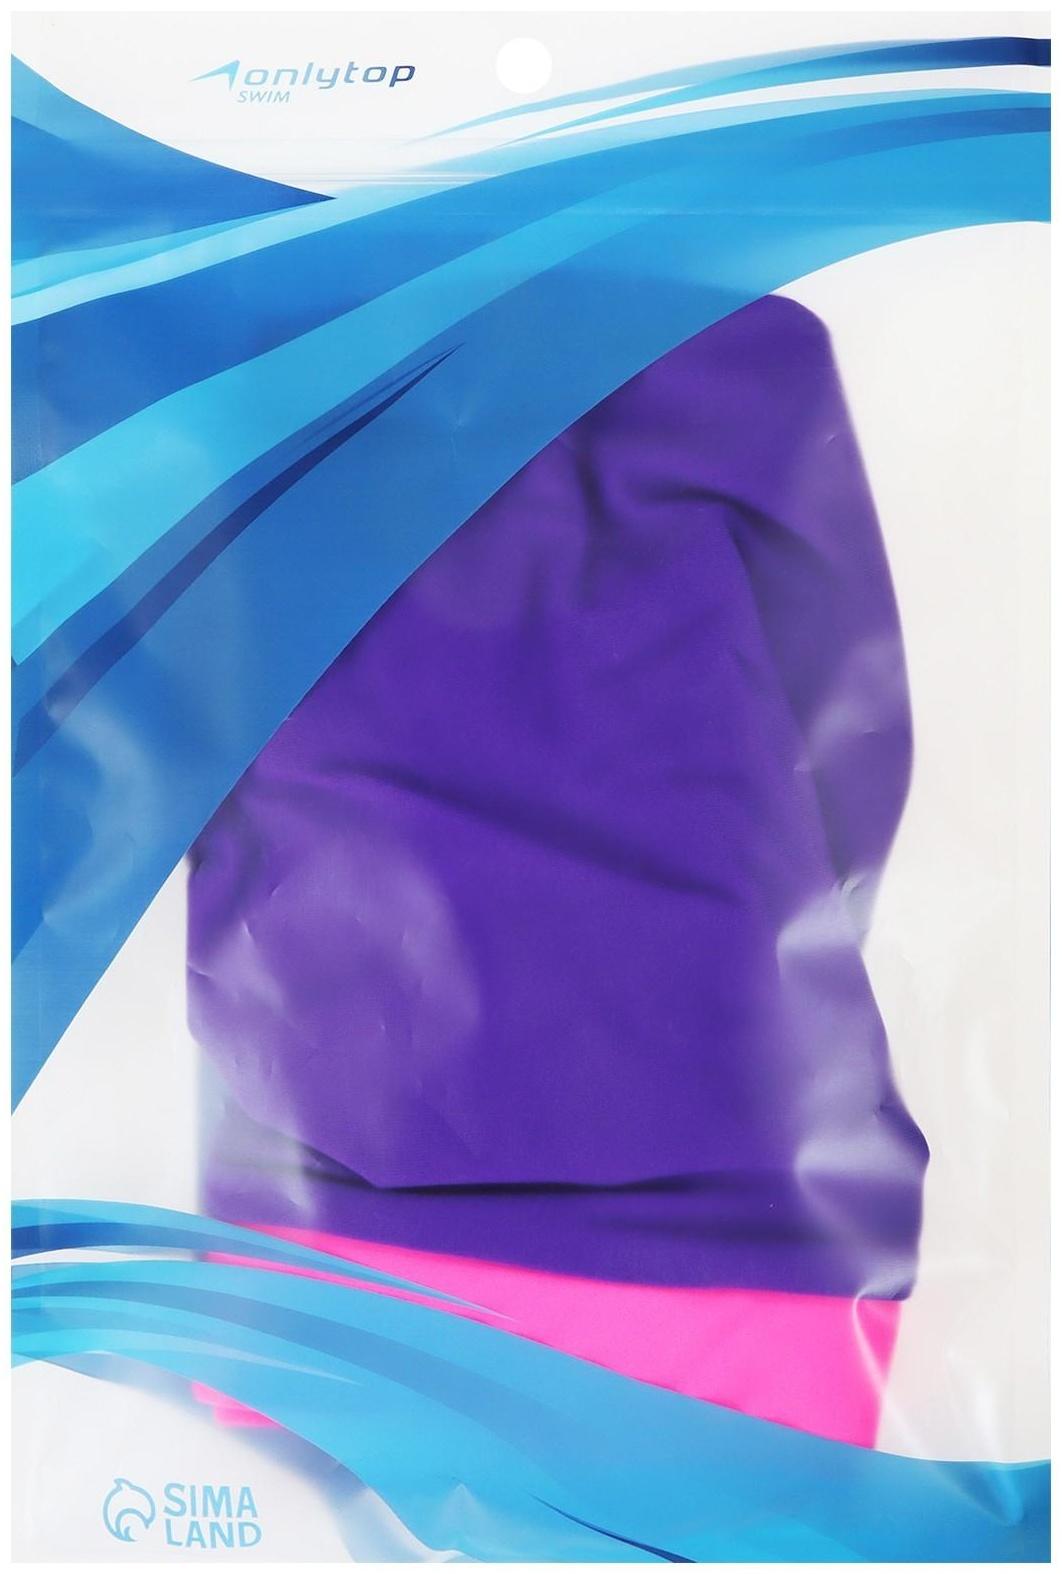 Шапочка для плавания объёмная двухцветная, лайкра, цвет ярко-фиолетовый/розовый